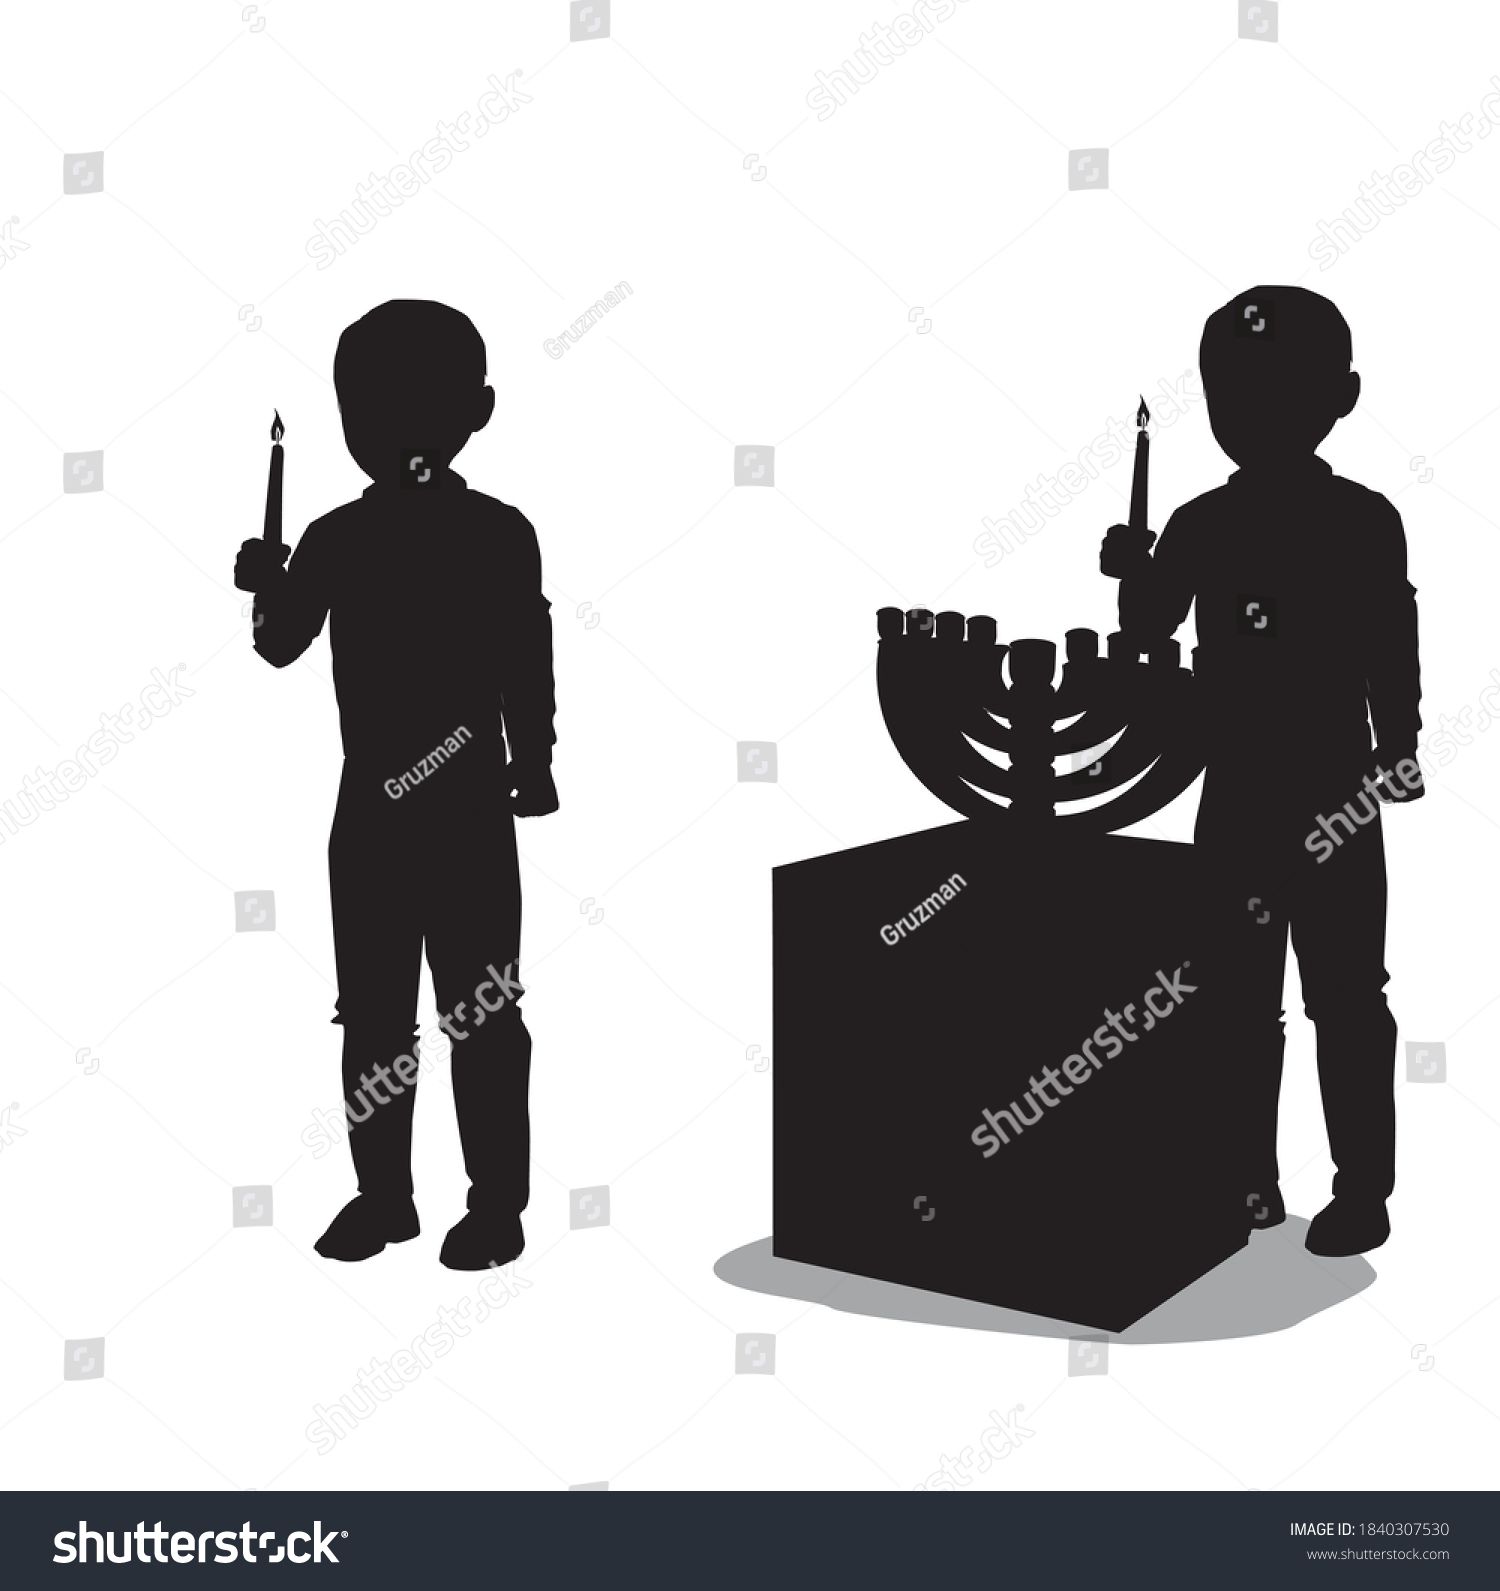 צלליות וקטוריות שחורות של ילד יהודי מדליק נרות חנוכה בחנוכיה-1840307530.jpg